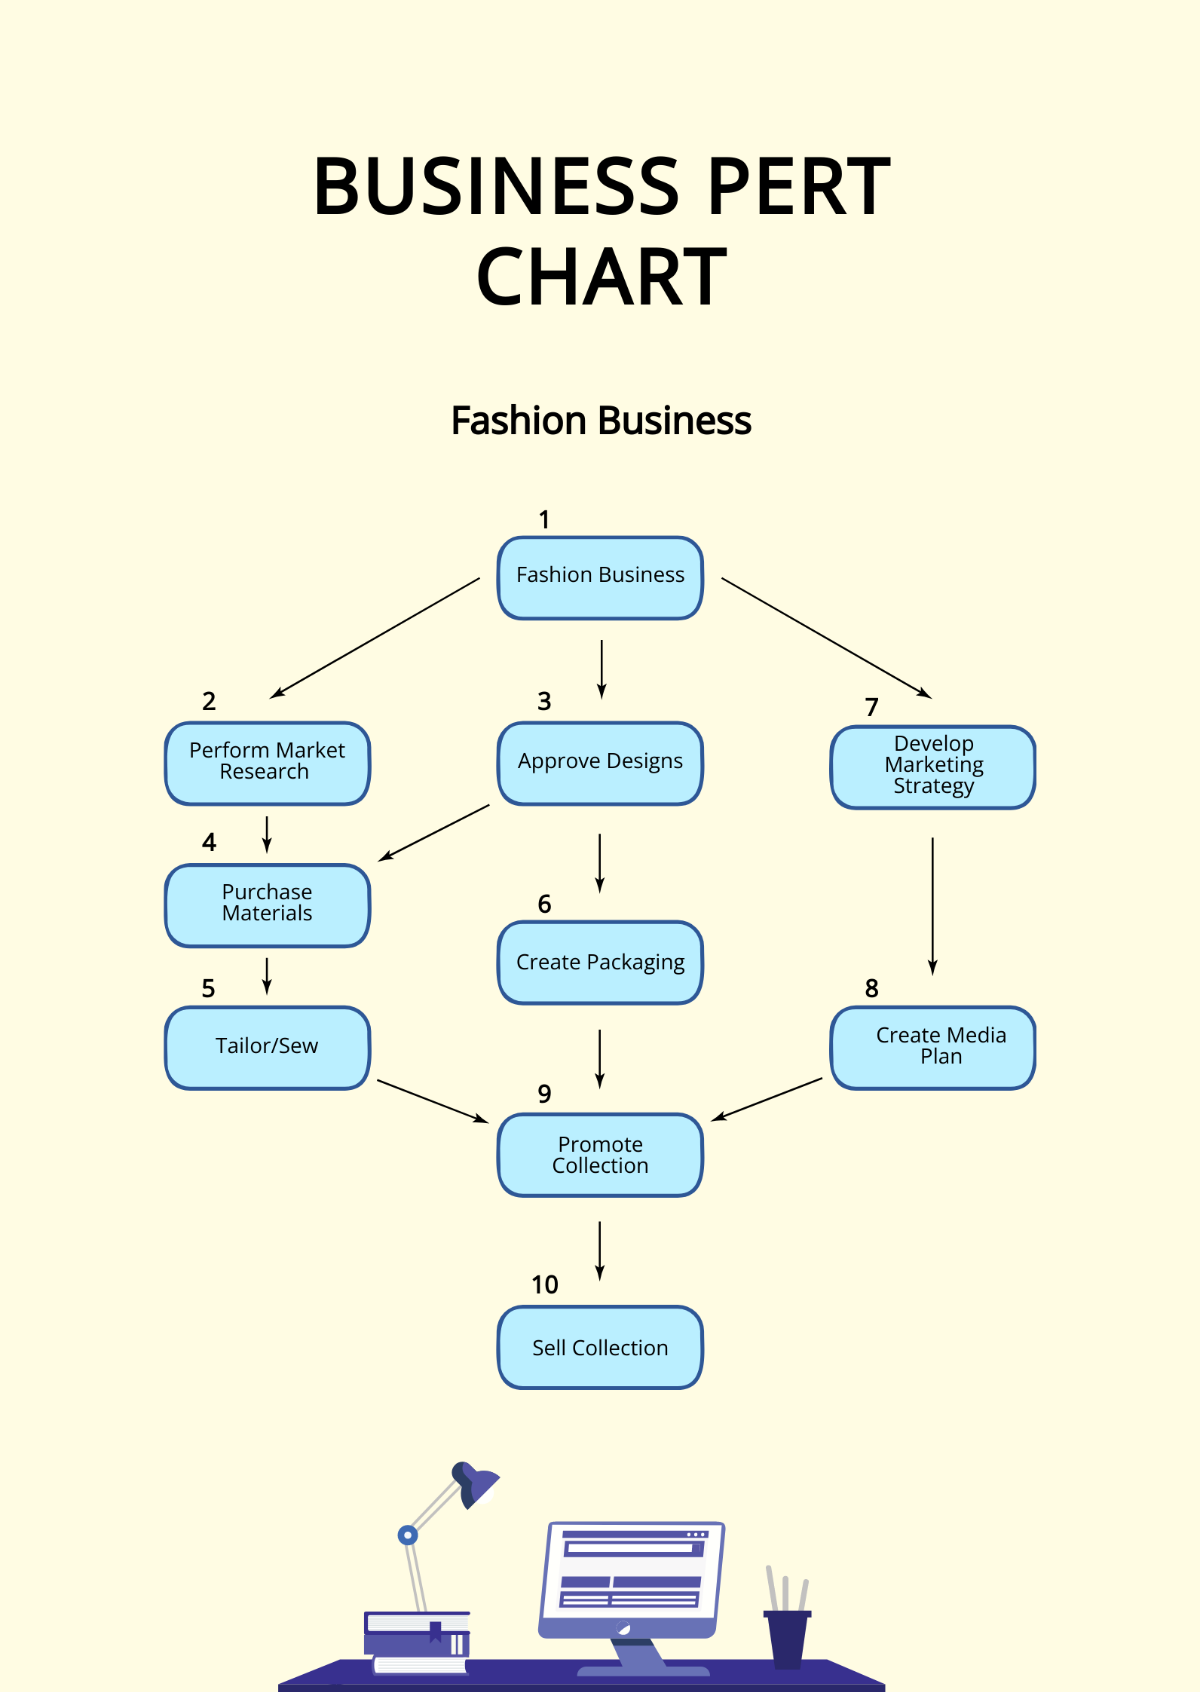 Business PERT Chart